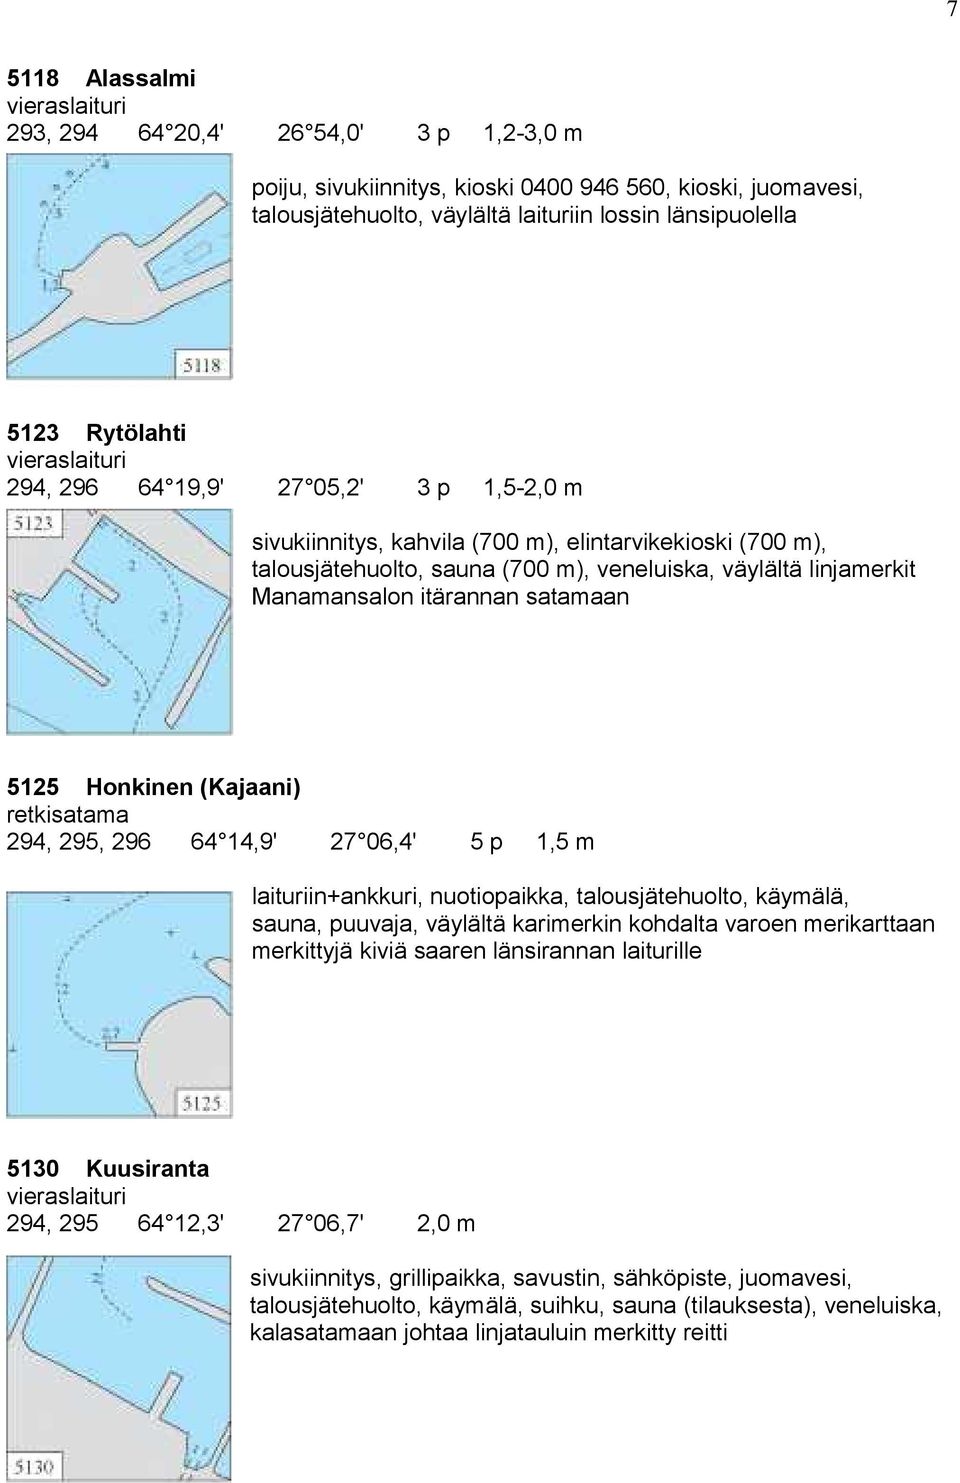 Honkinen (Kajaani) 294, 295, 296 64 14,9' 27 06,4' 5 p 1,5 m laituriin+ankkuri, nuotiopaikka, talousjätehuolto, käymälä, sauna, puuvaja, väylältä karimerkin kohdalta varoen merikarttaan merkittyjä